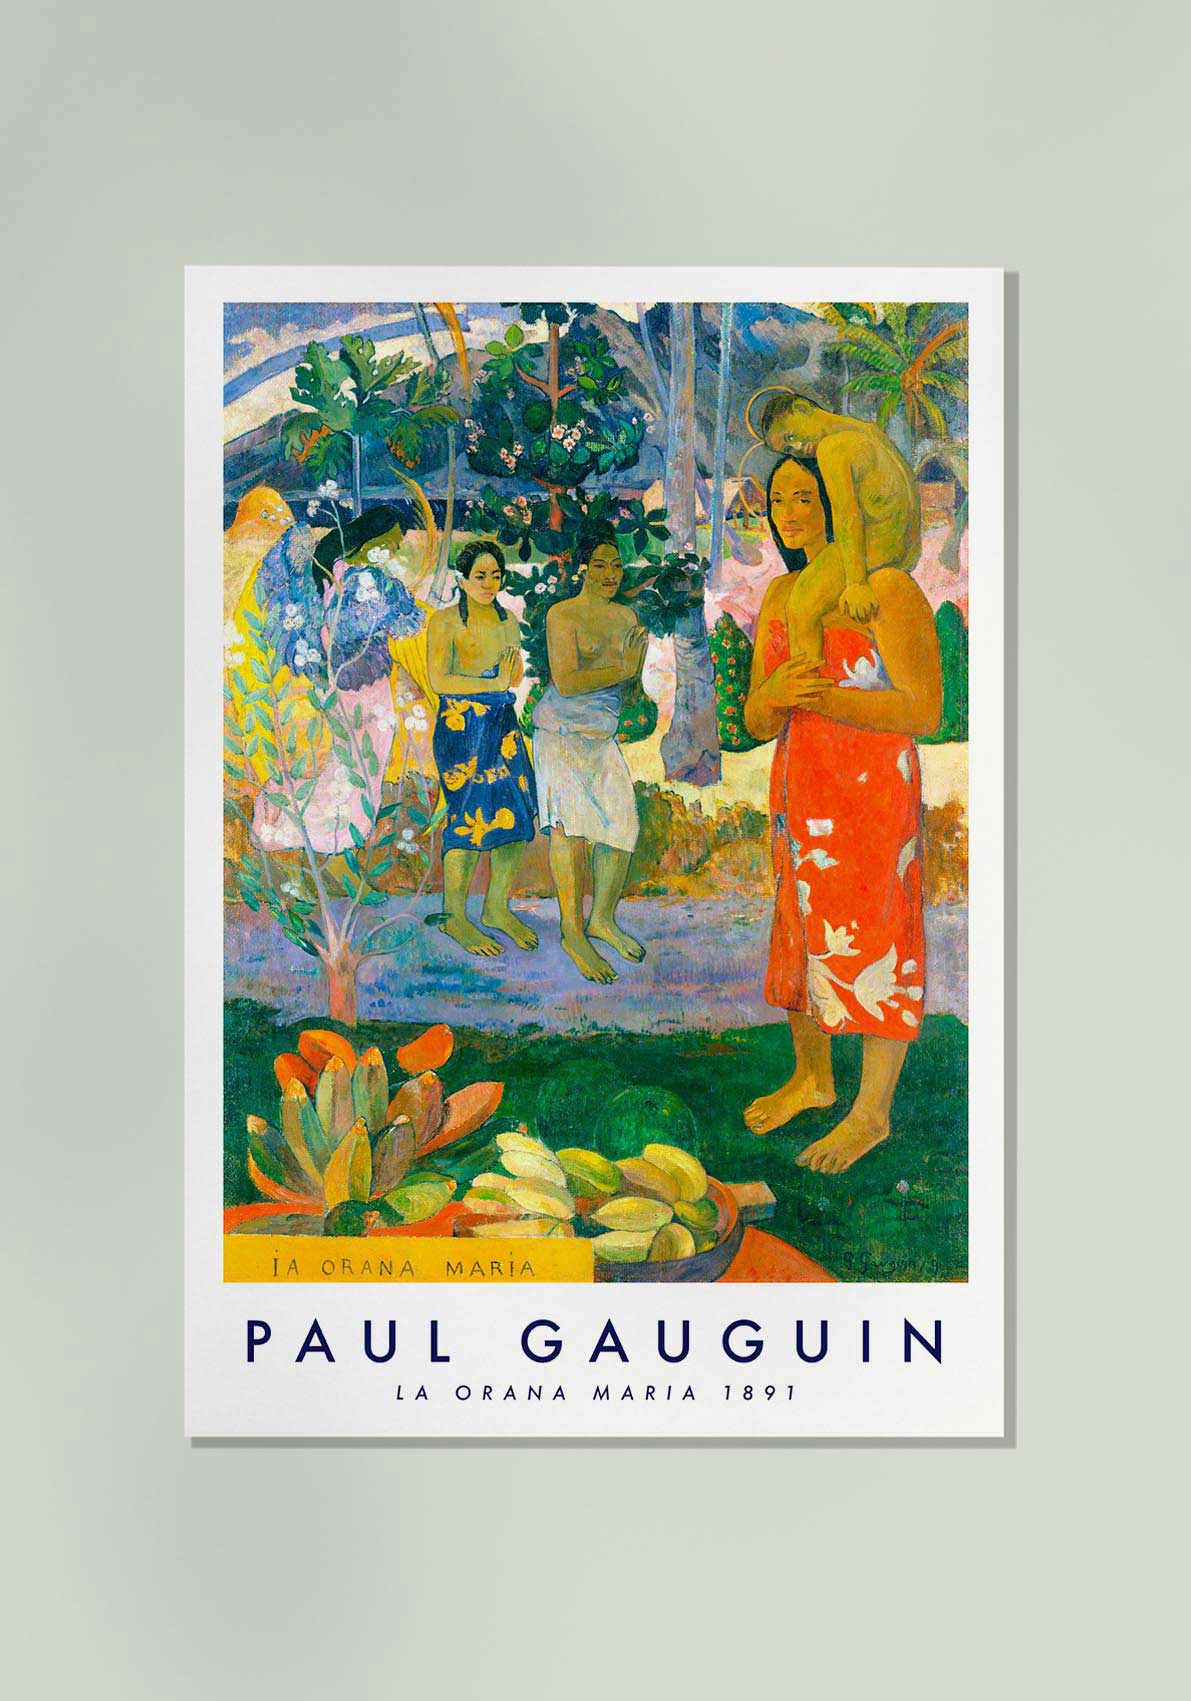 La Orana Maria by Paul Gauguin